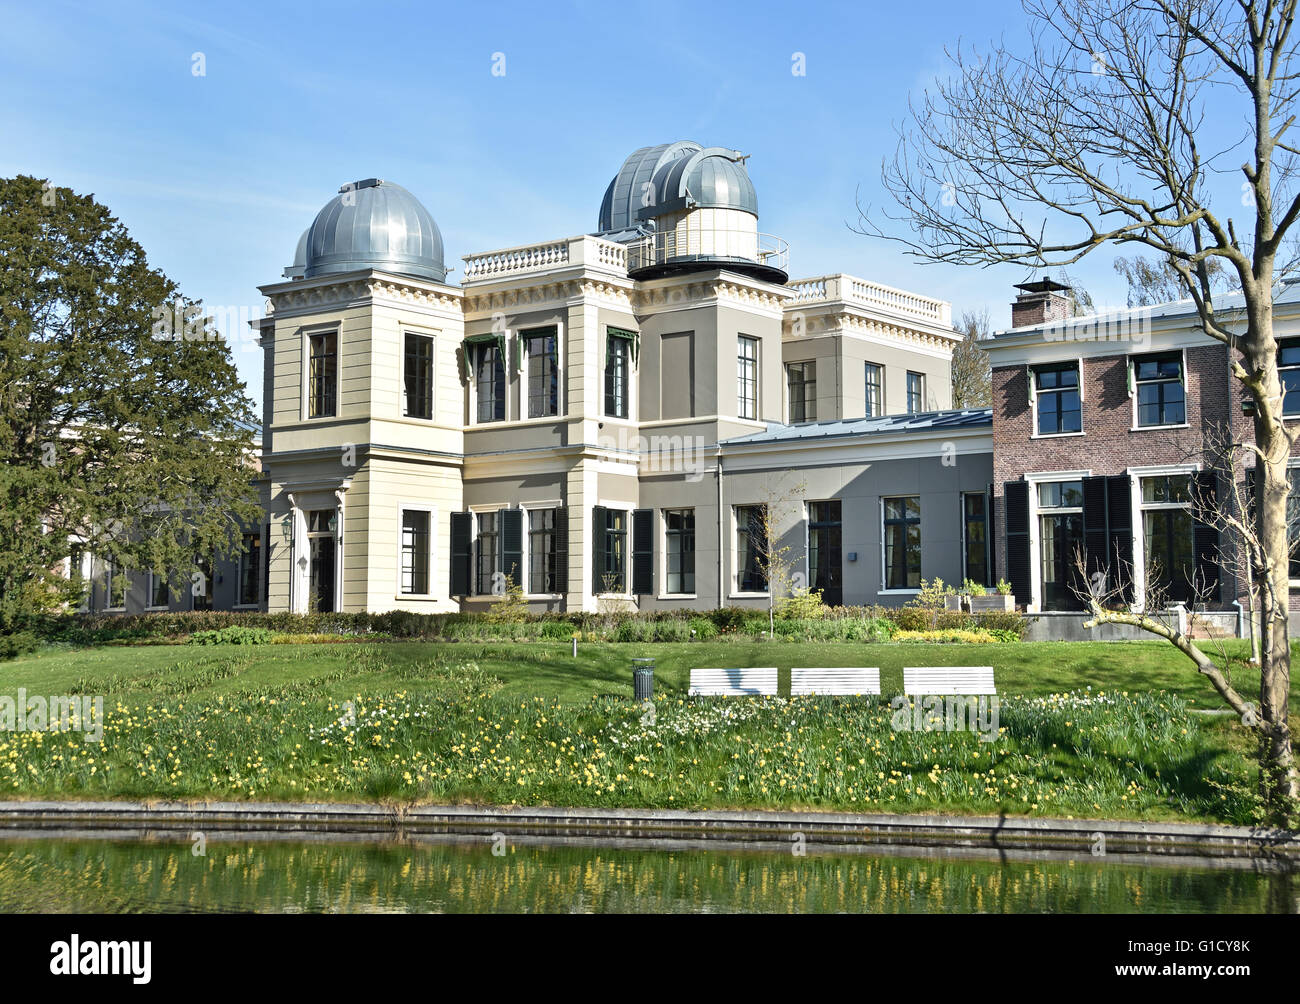 Sterrenwacht Leiden 1633 Observatoire astronomique du vieil University 1575 (où Albert Einstein y enseigne ) Pays-Bas Banque D'Images